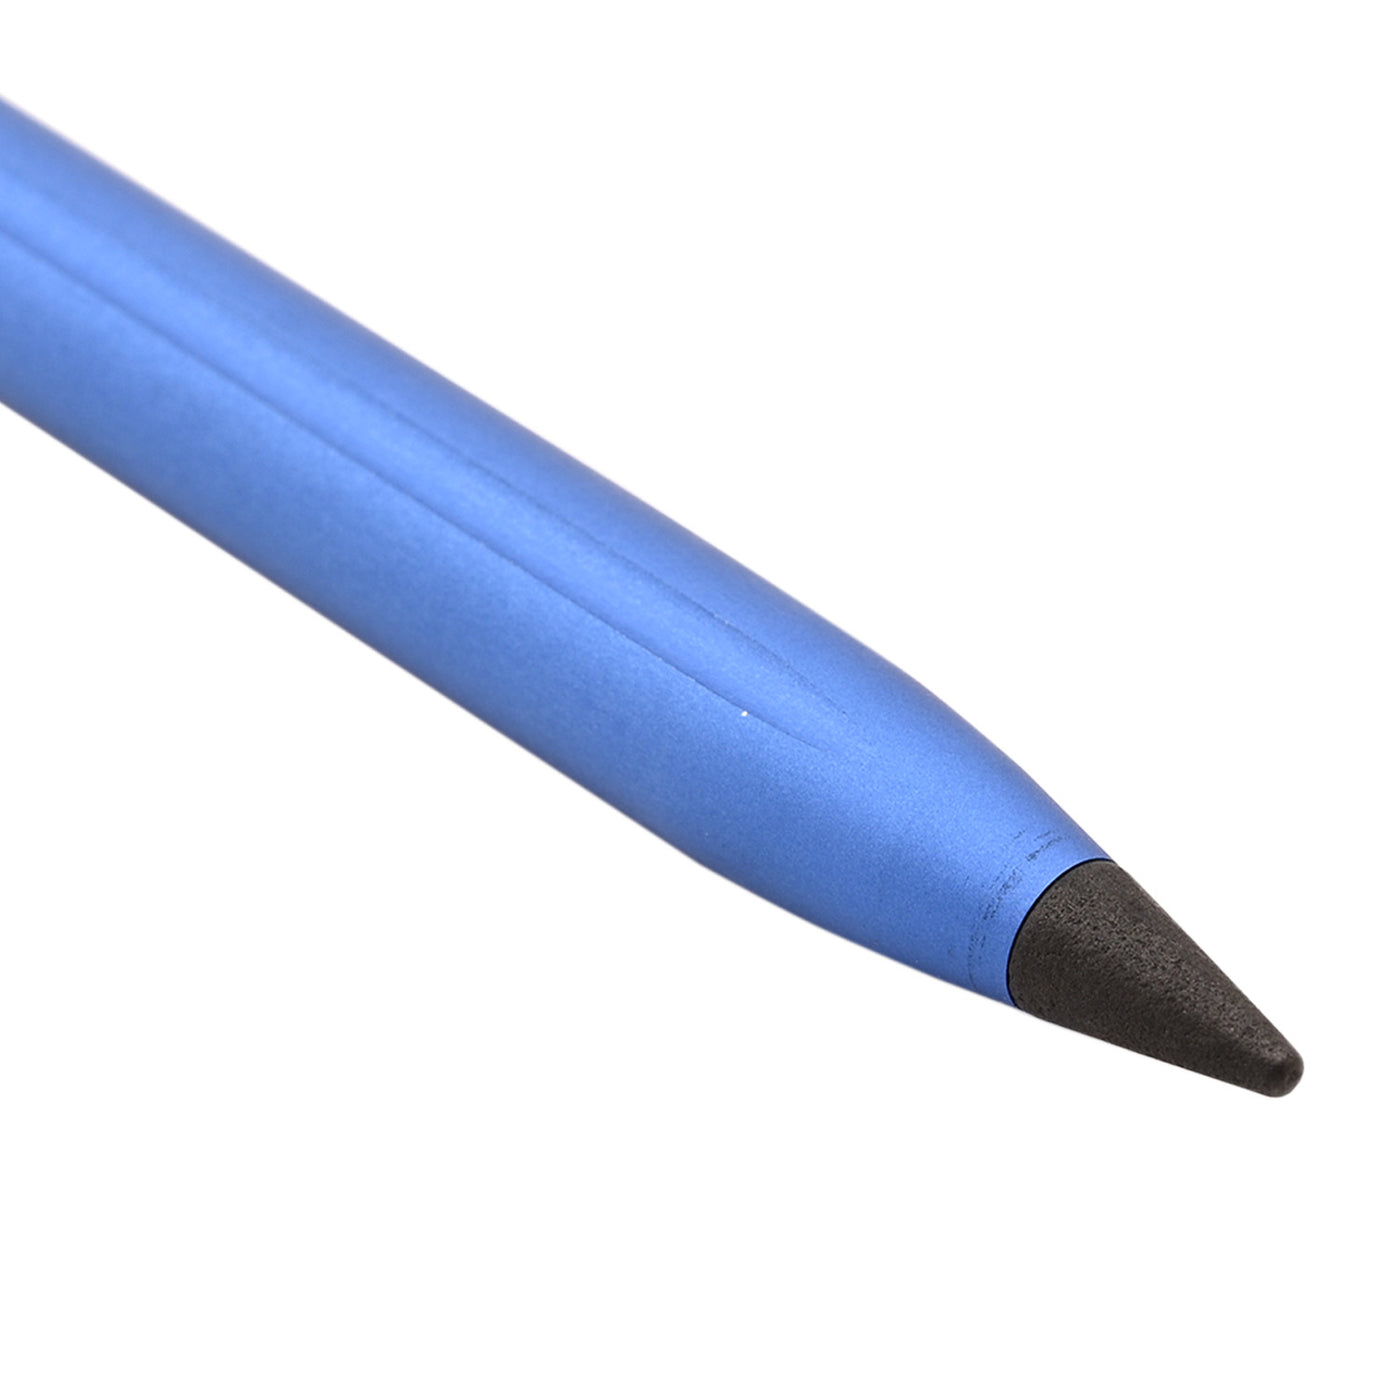 Pininfarina Segno Smart Maserati Edition Pencil - Blue 2